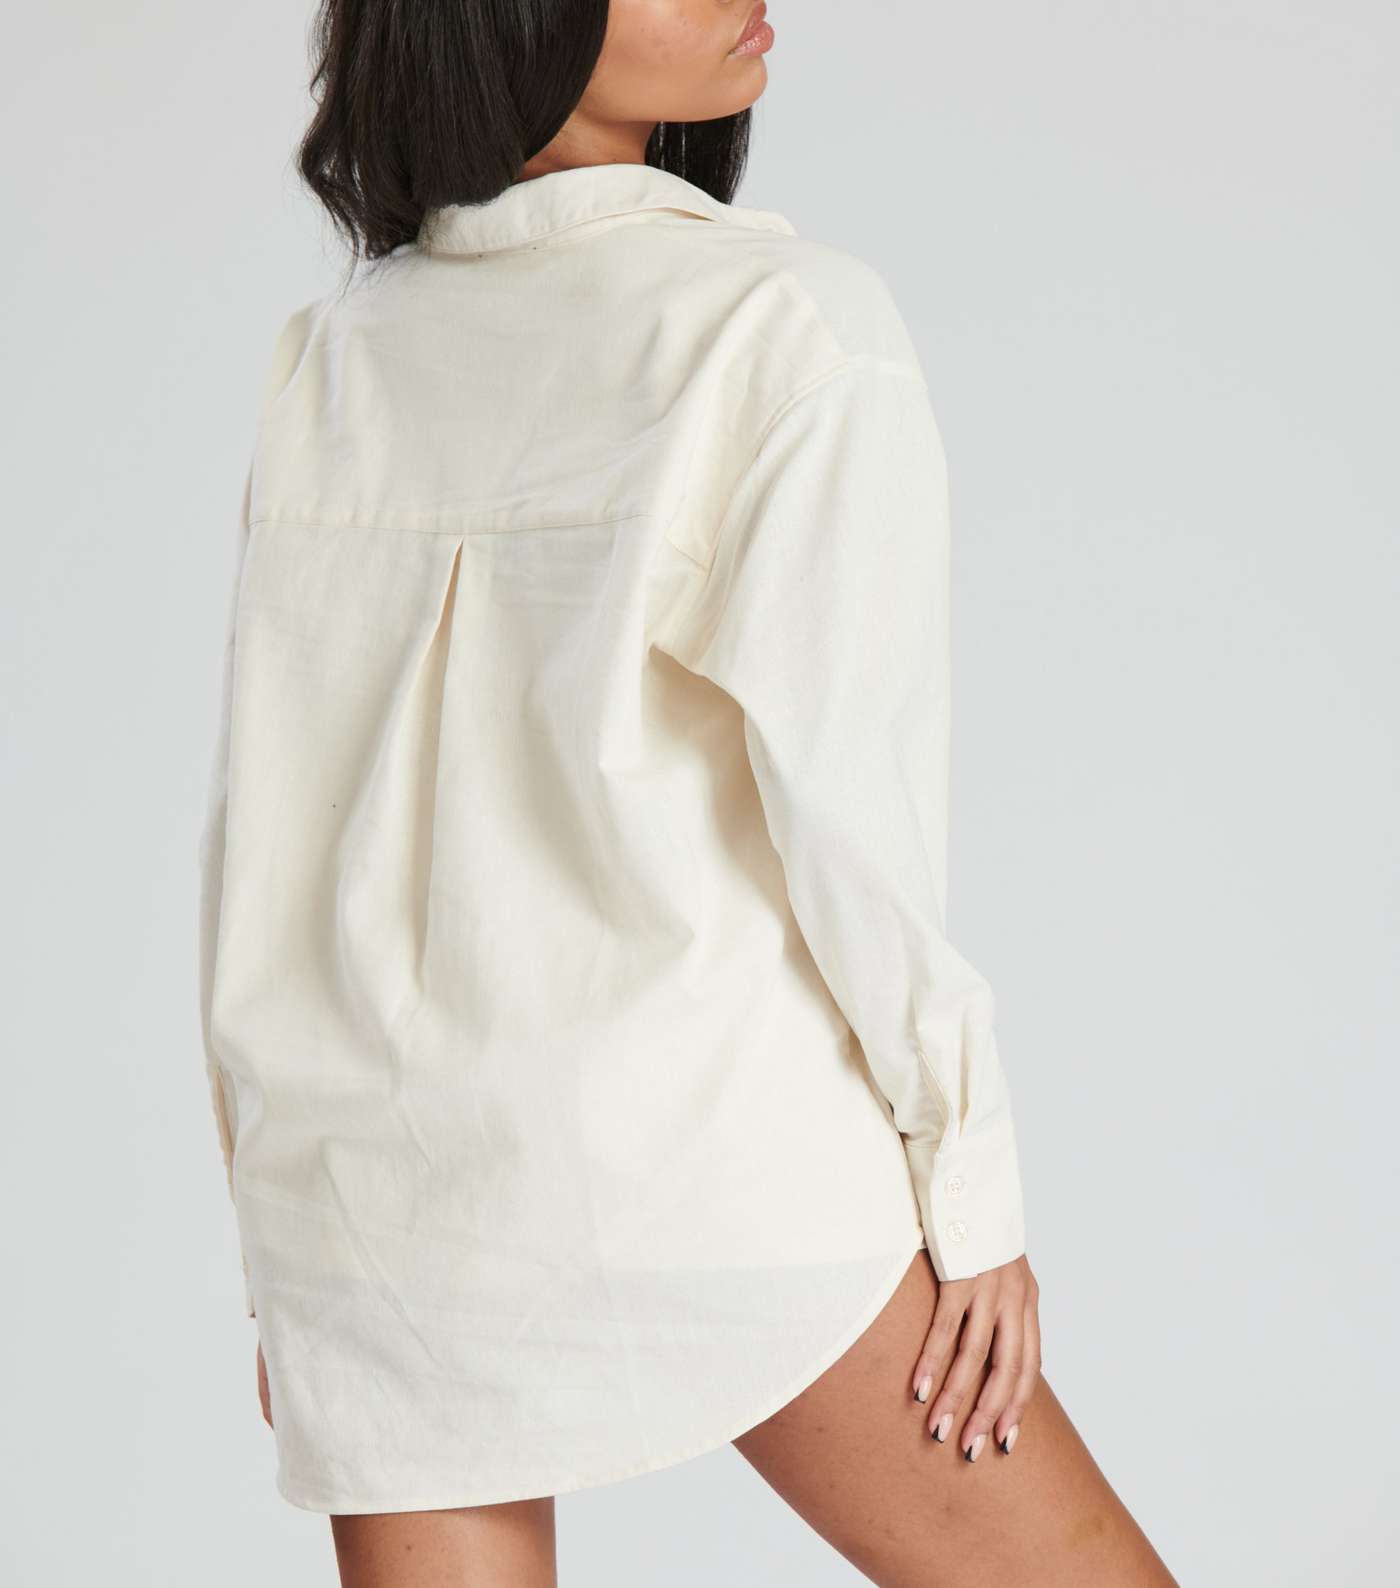 South Beach Cream Linen-Look Oversized Shirt Image 2